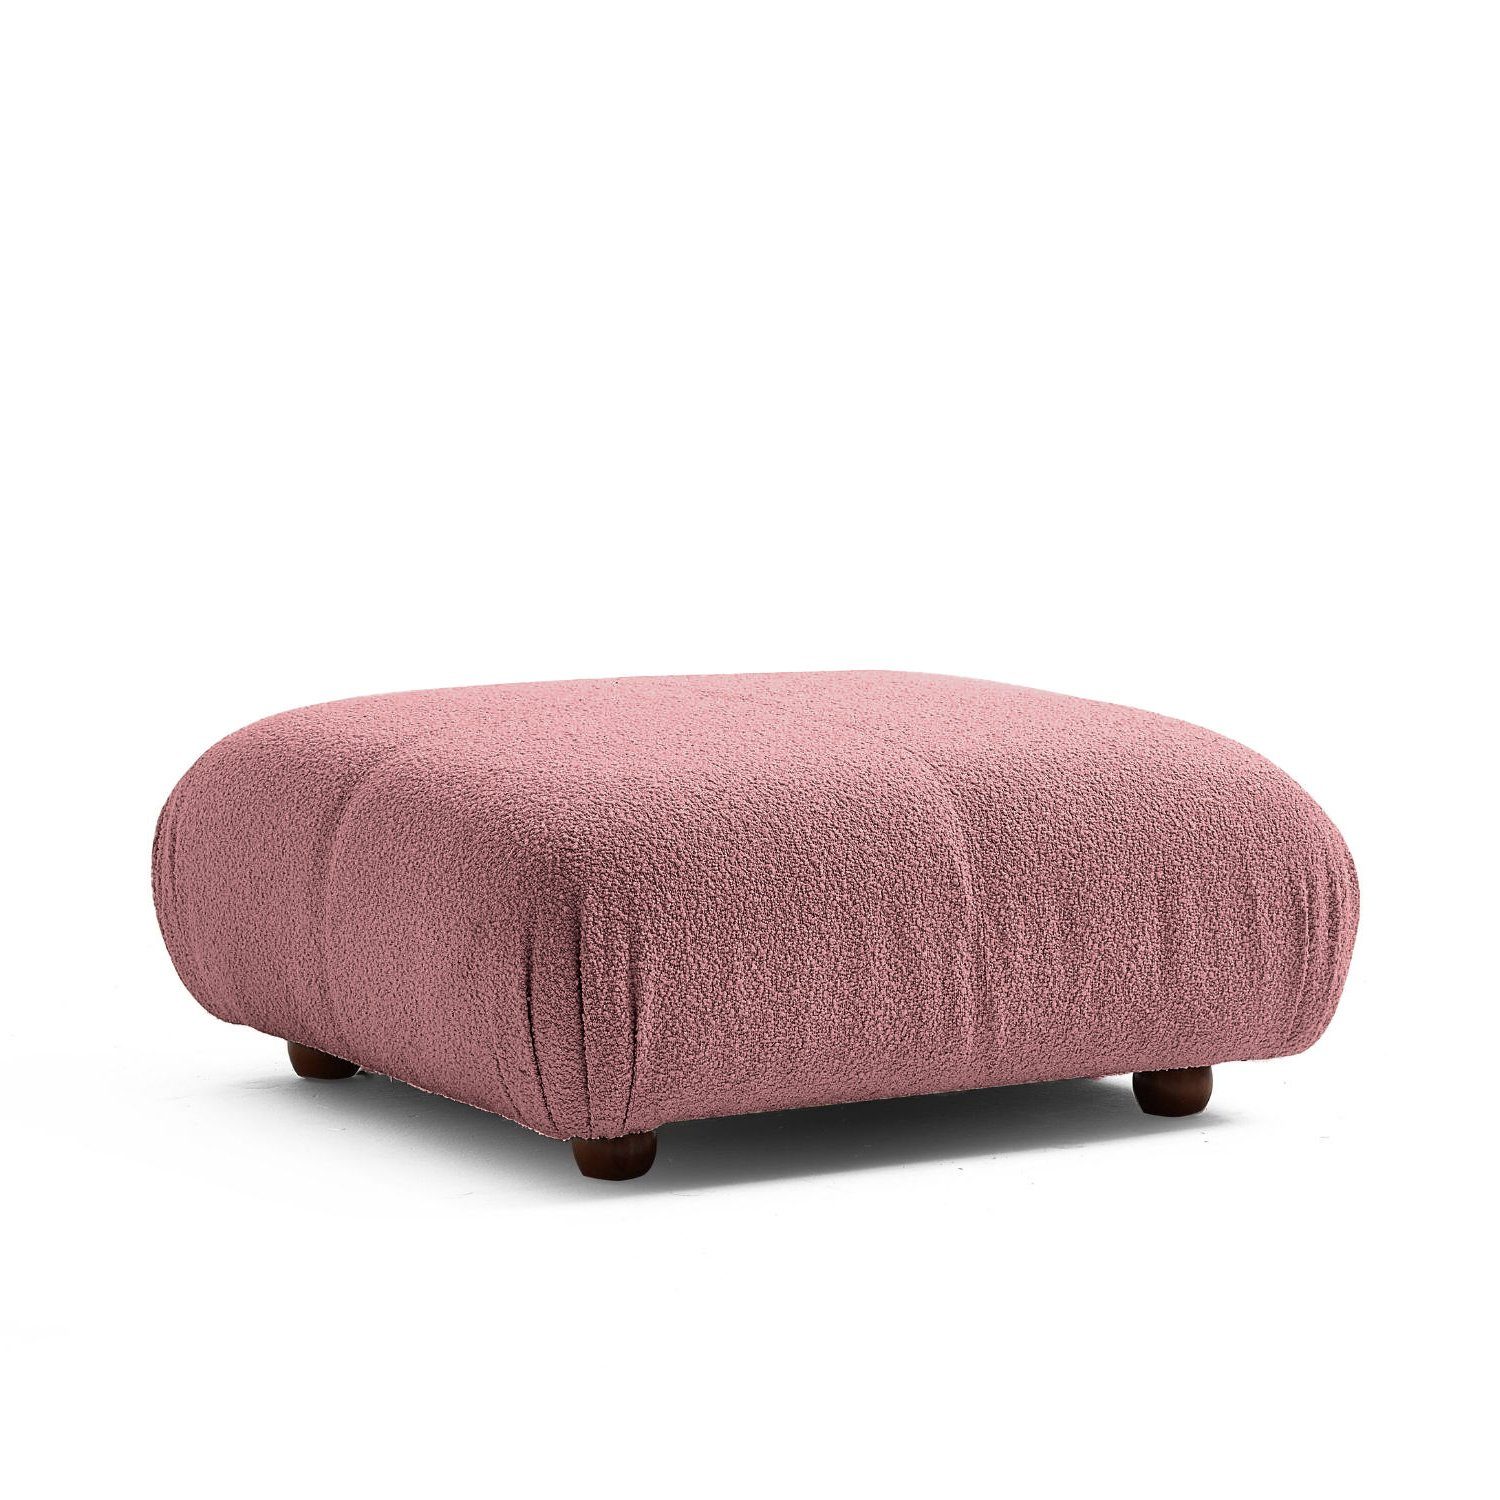 Generation me und Sofa Knuffiges Komfortschaum Preis aus Sitzmöbel Aufbau neueste enthalten! Touch im Samtrot-Lieferung